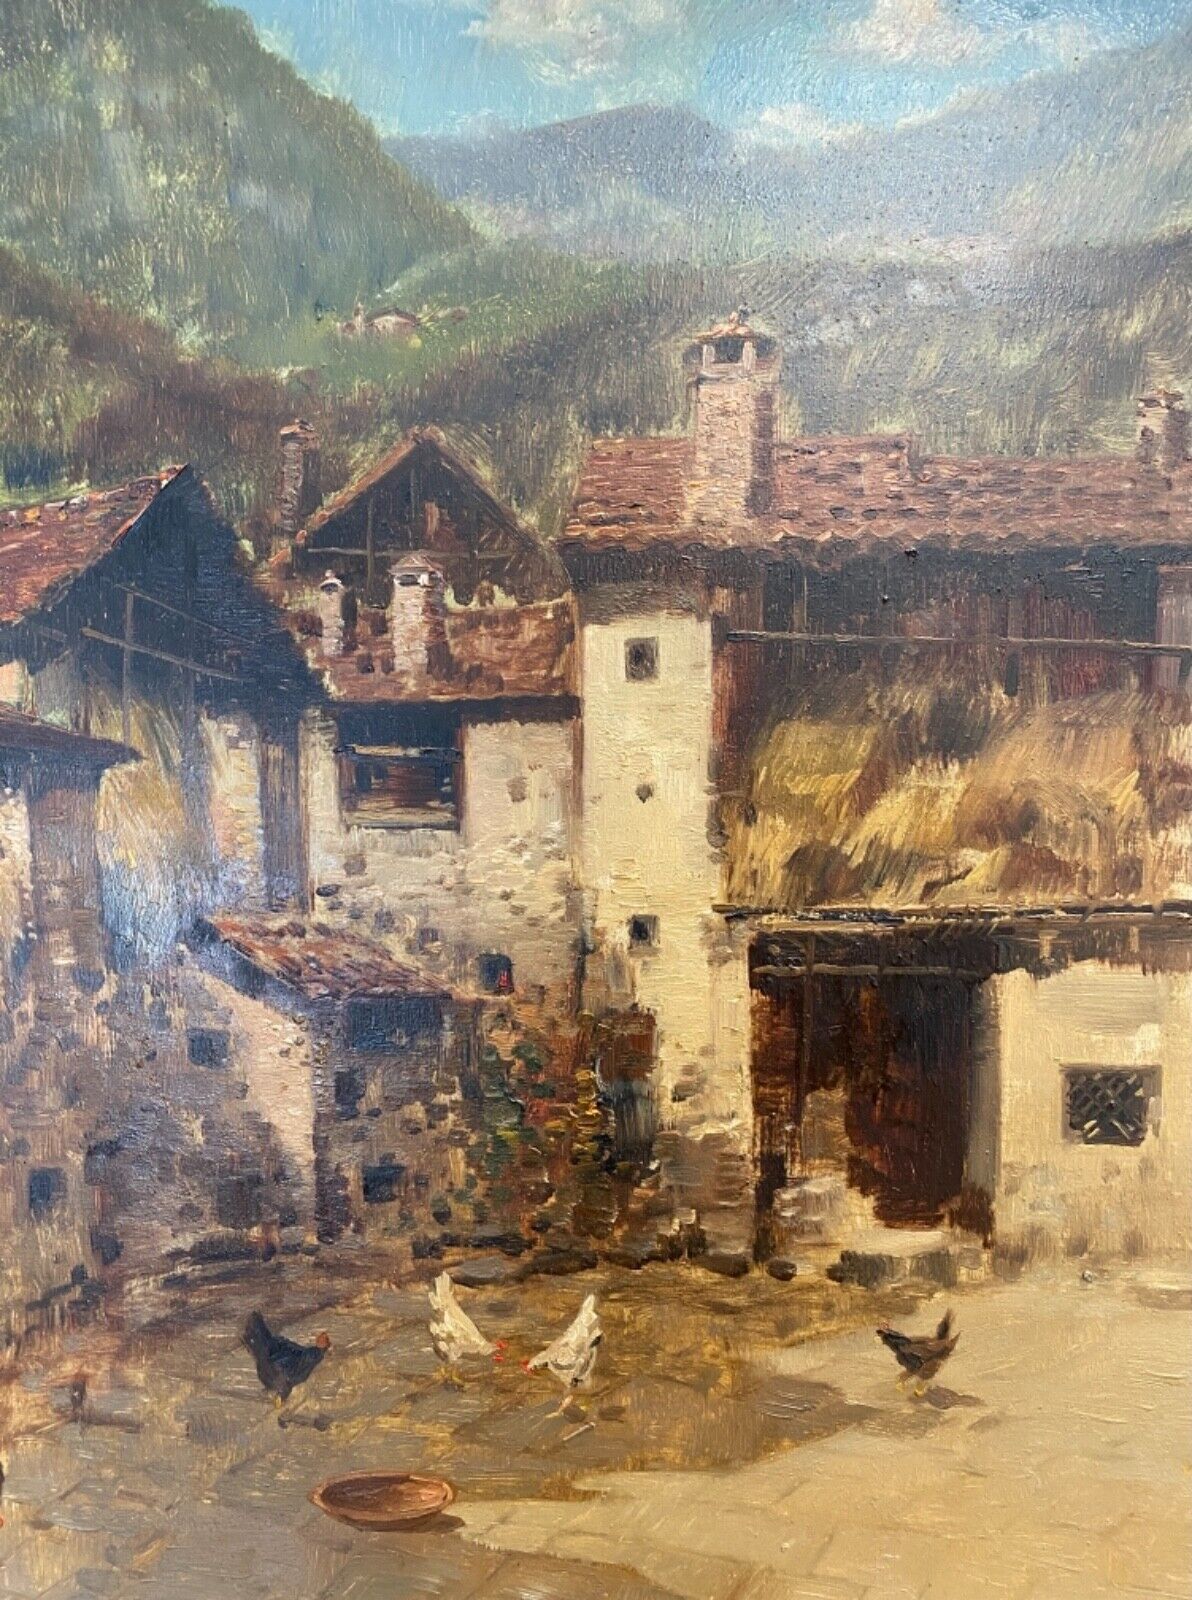 Dipinto ad olio su tela di Antonio Gravina: scena di campagna – Dettaglio